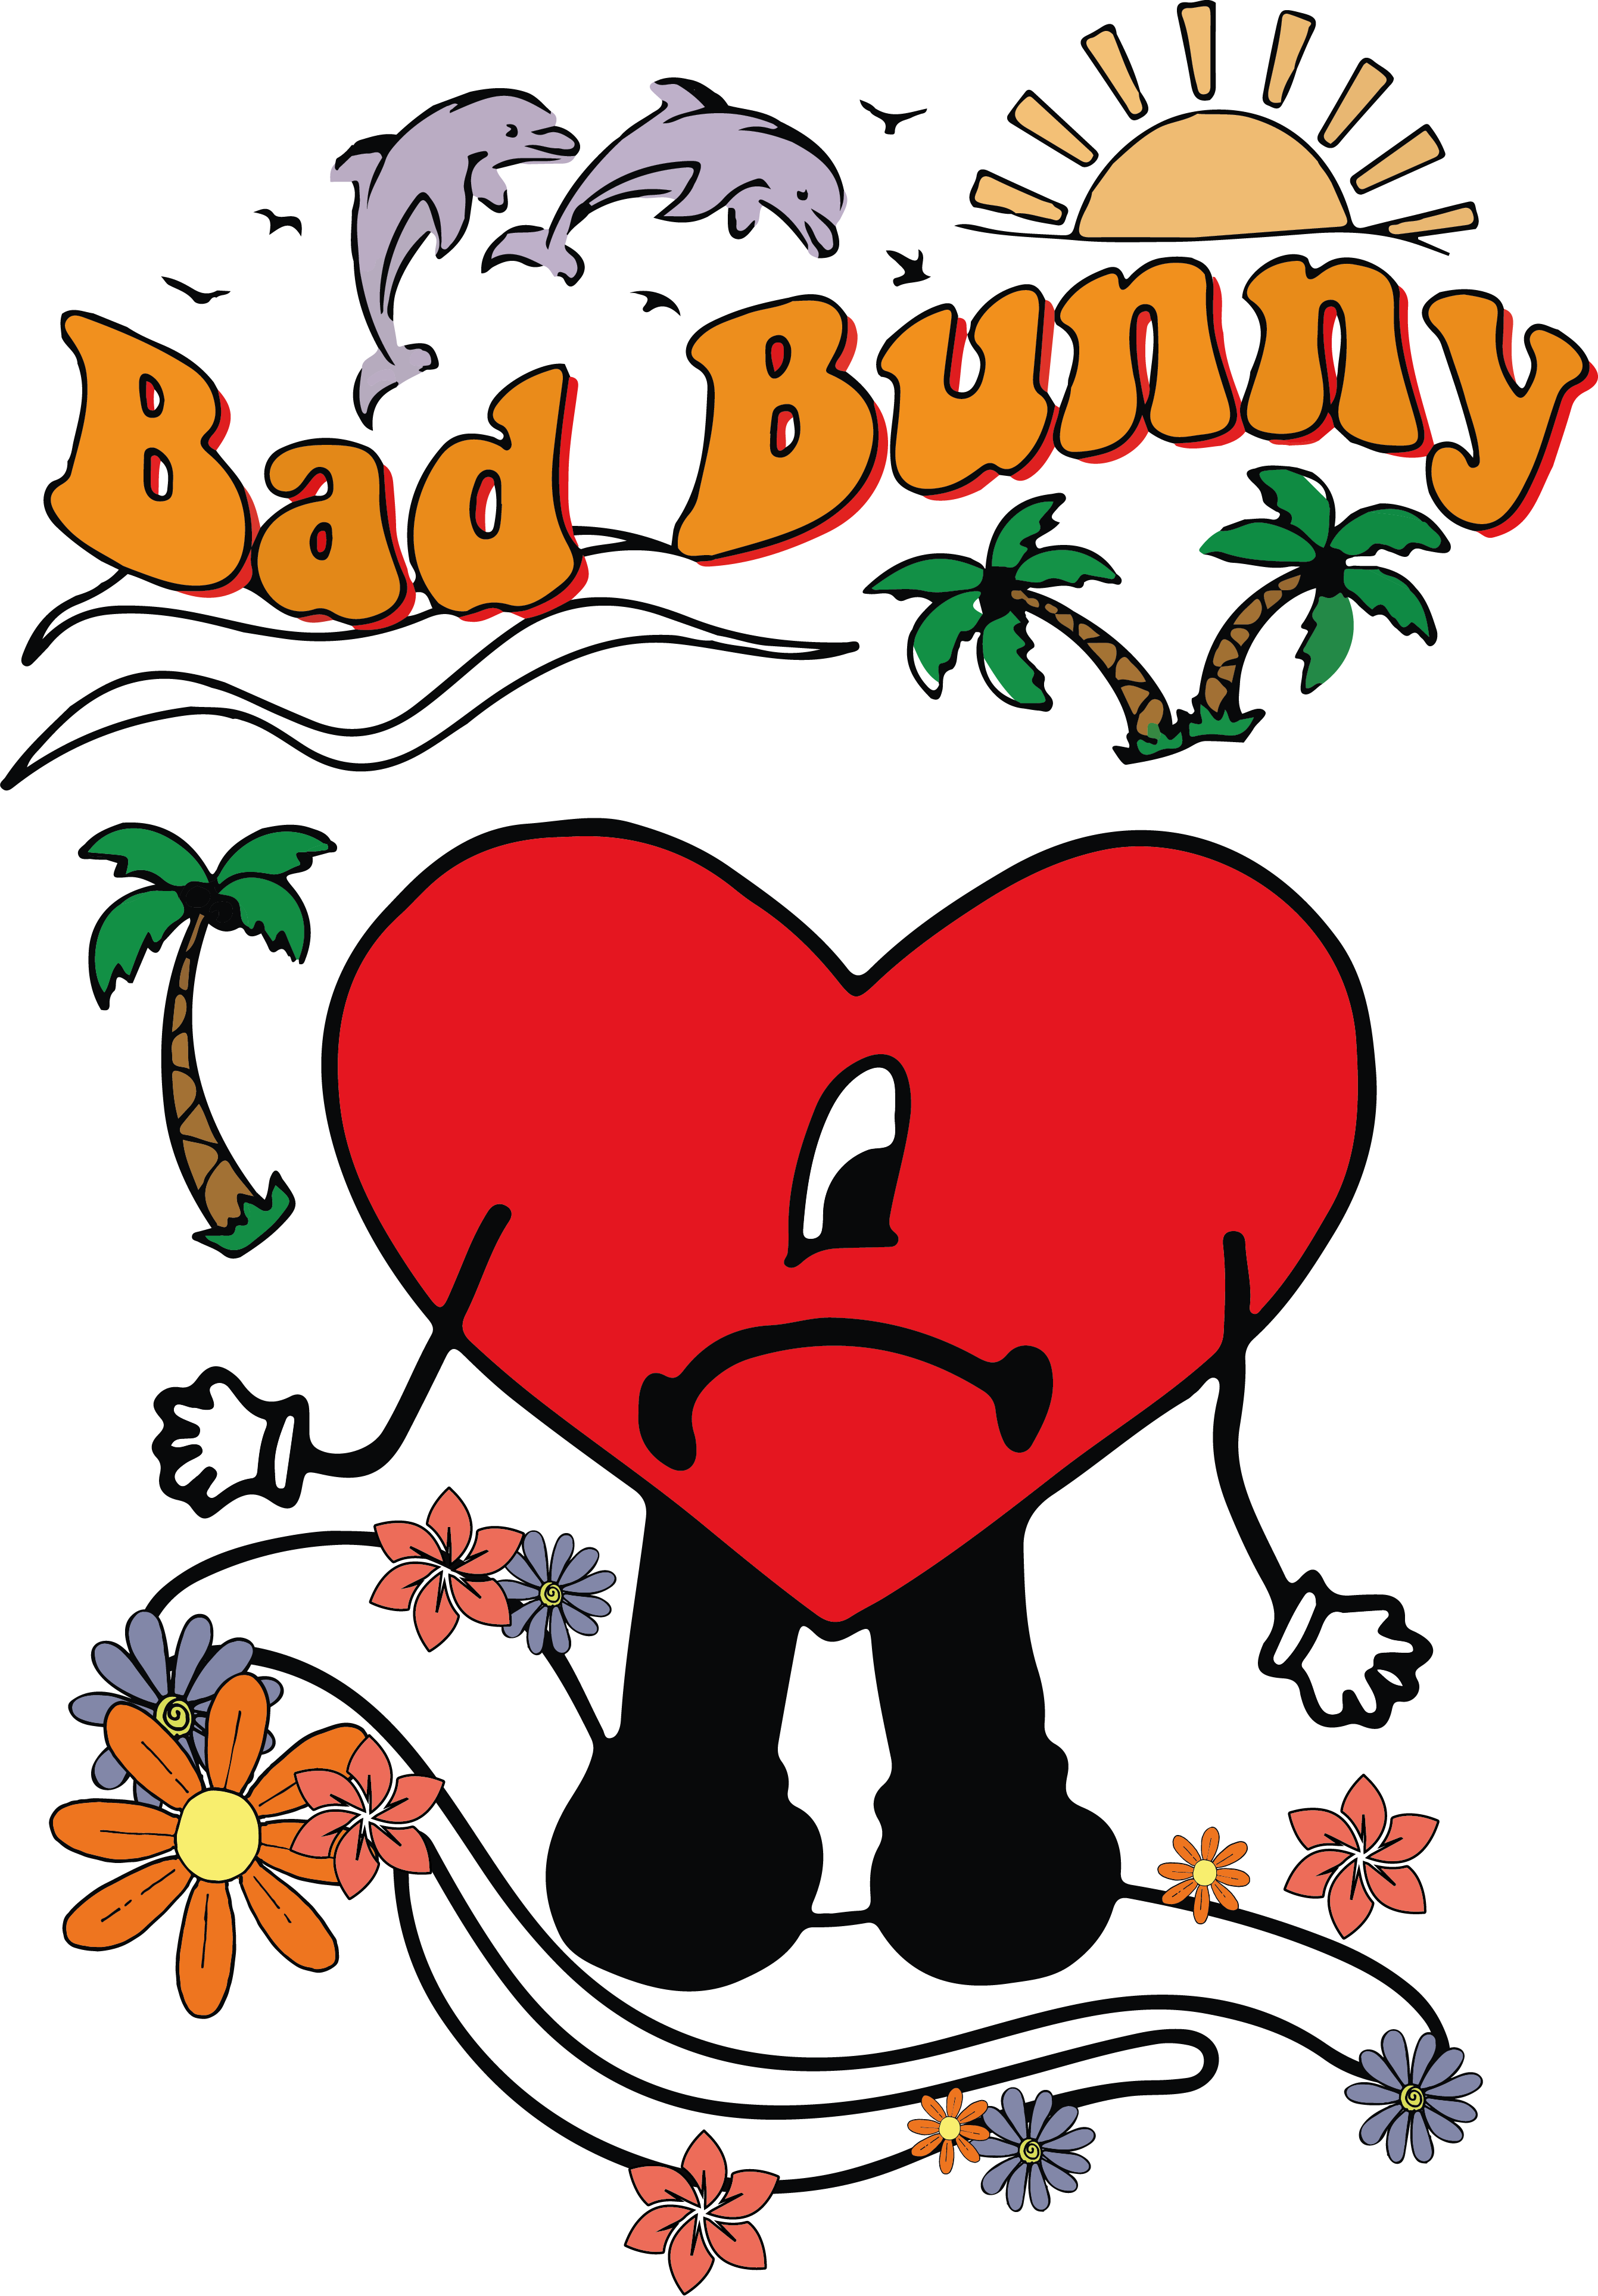 Corazon De Bad Bunny PNG Photos